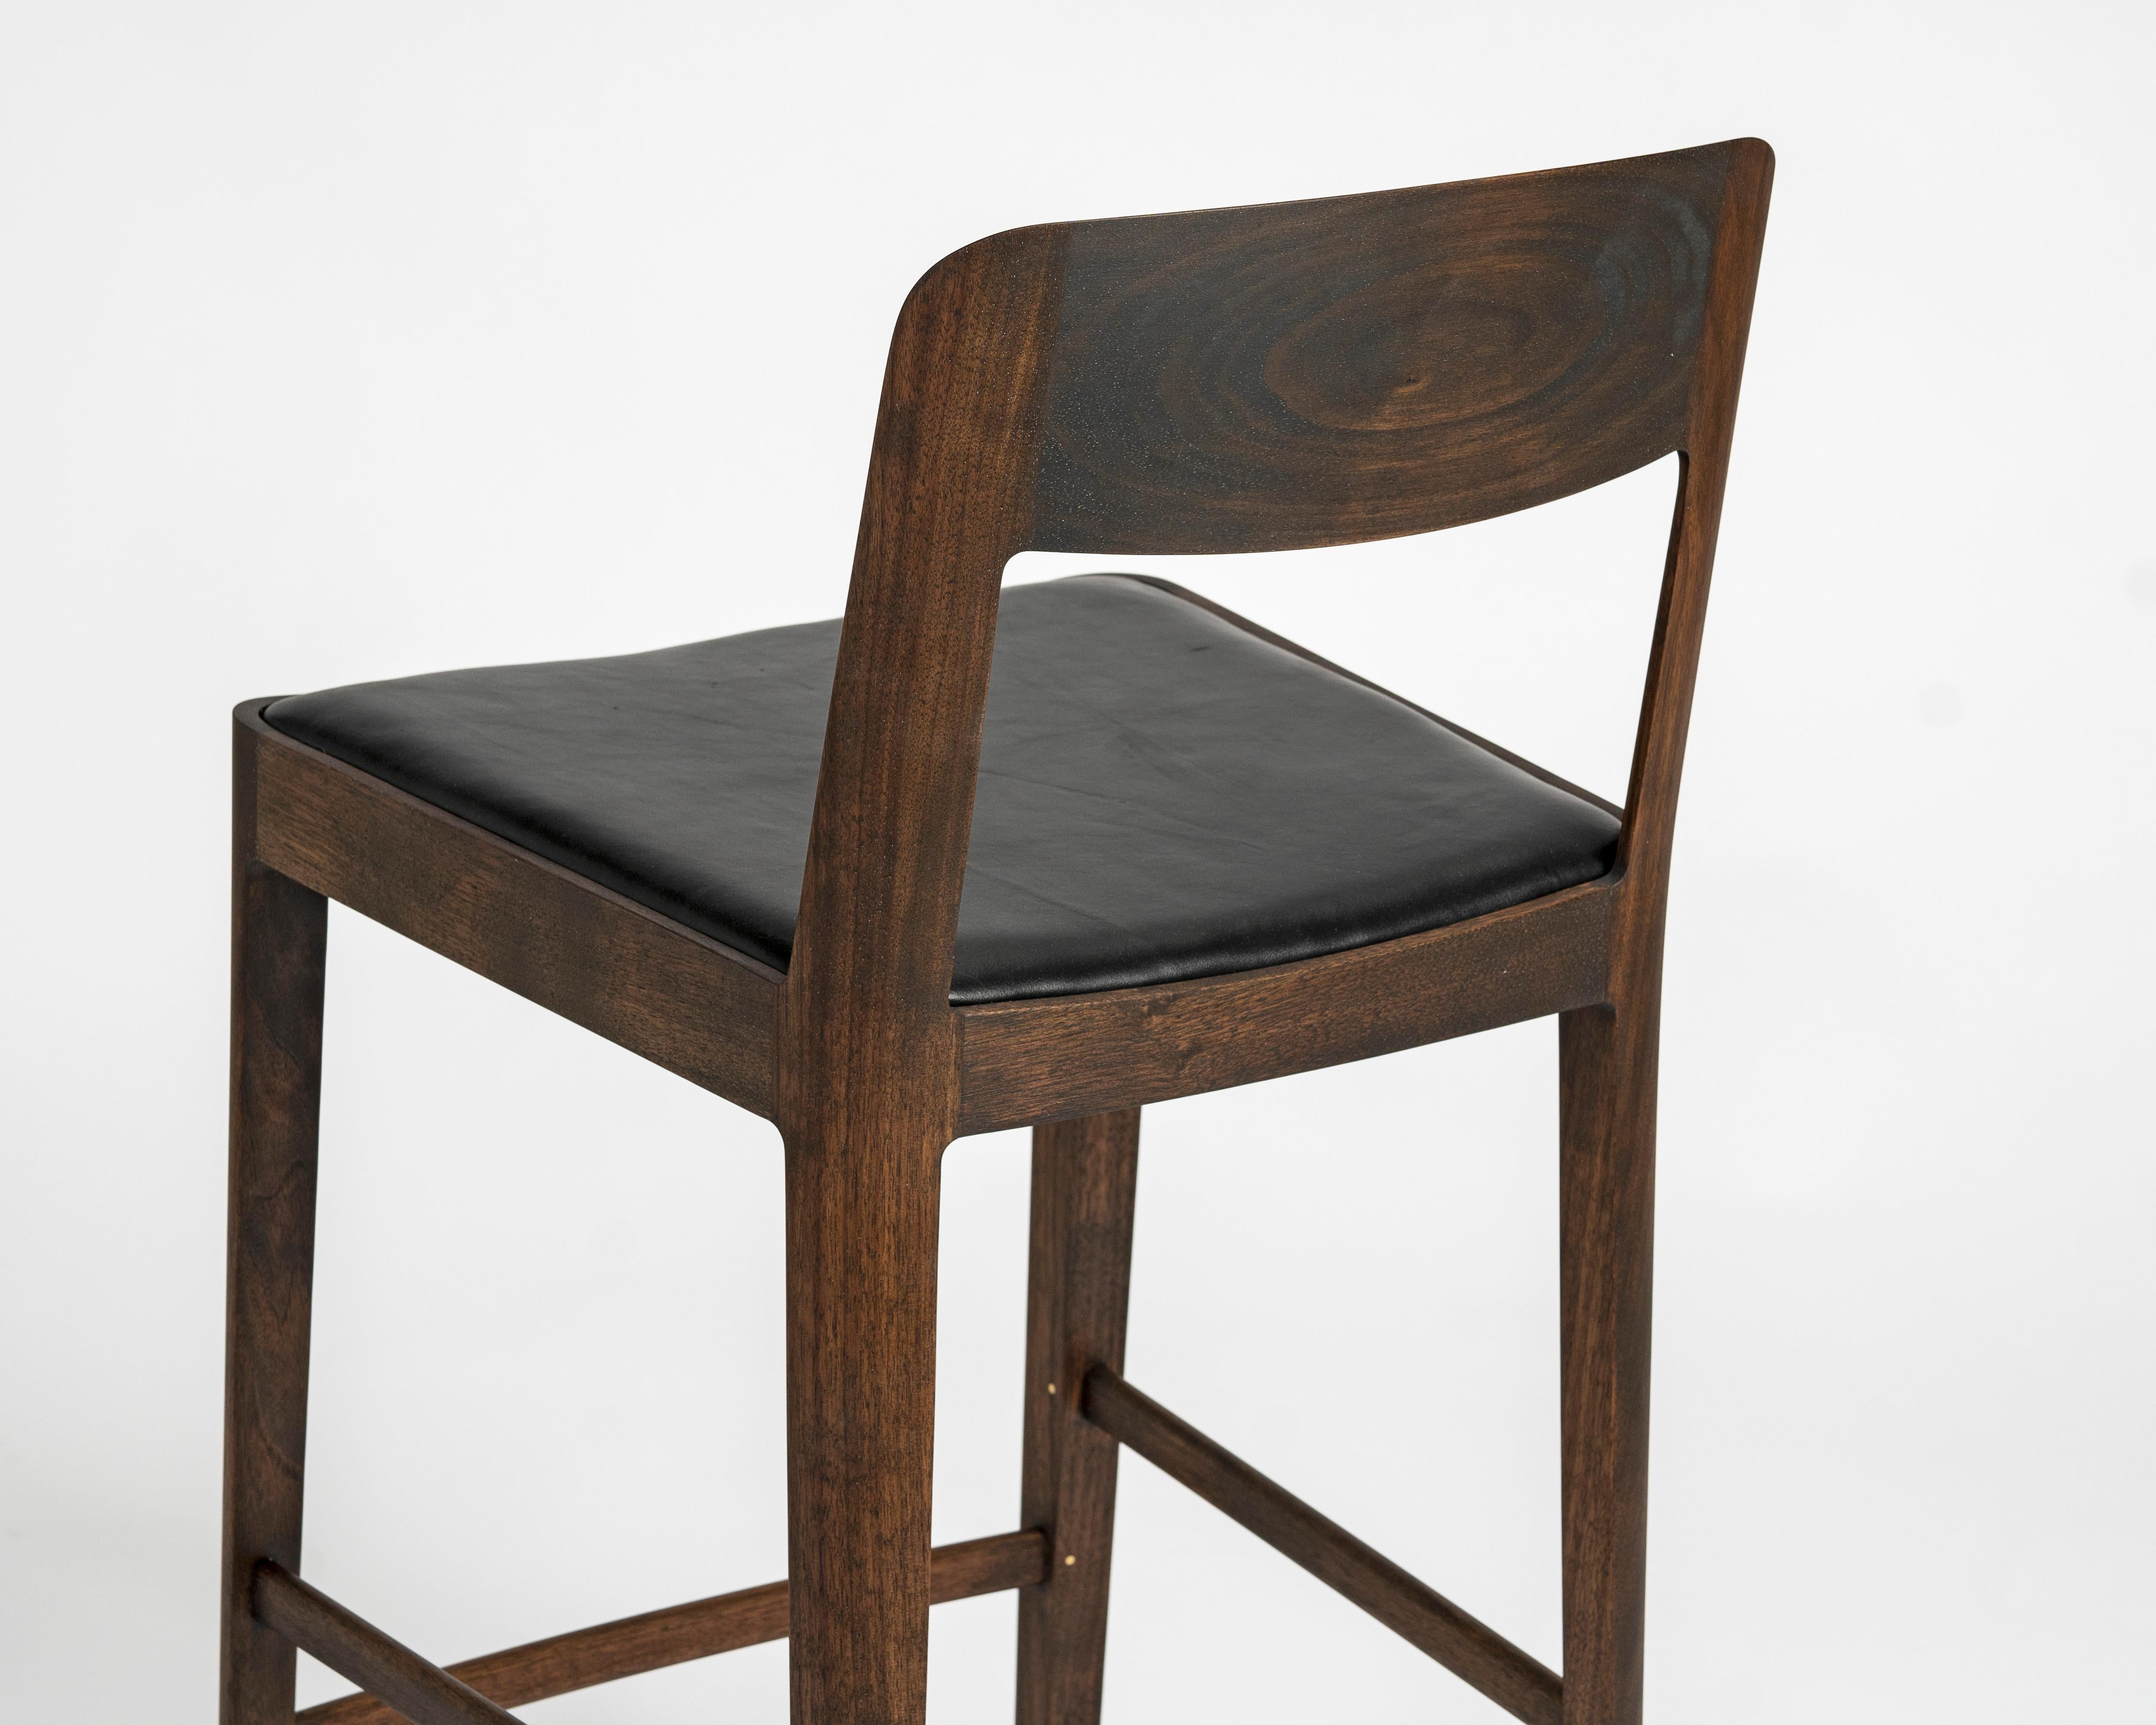 Unsere Sitzmöbelkollektion Linea steht für Leichtigkeit und Materialfreundlichkeit. Eine gewundene Struktur mit eleganten Proportionen, zurückhaltend und doch reich an zarten Details. 

Linea ist sowohl in Bar- als auch in Thekenhöhe erhältlich.